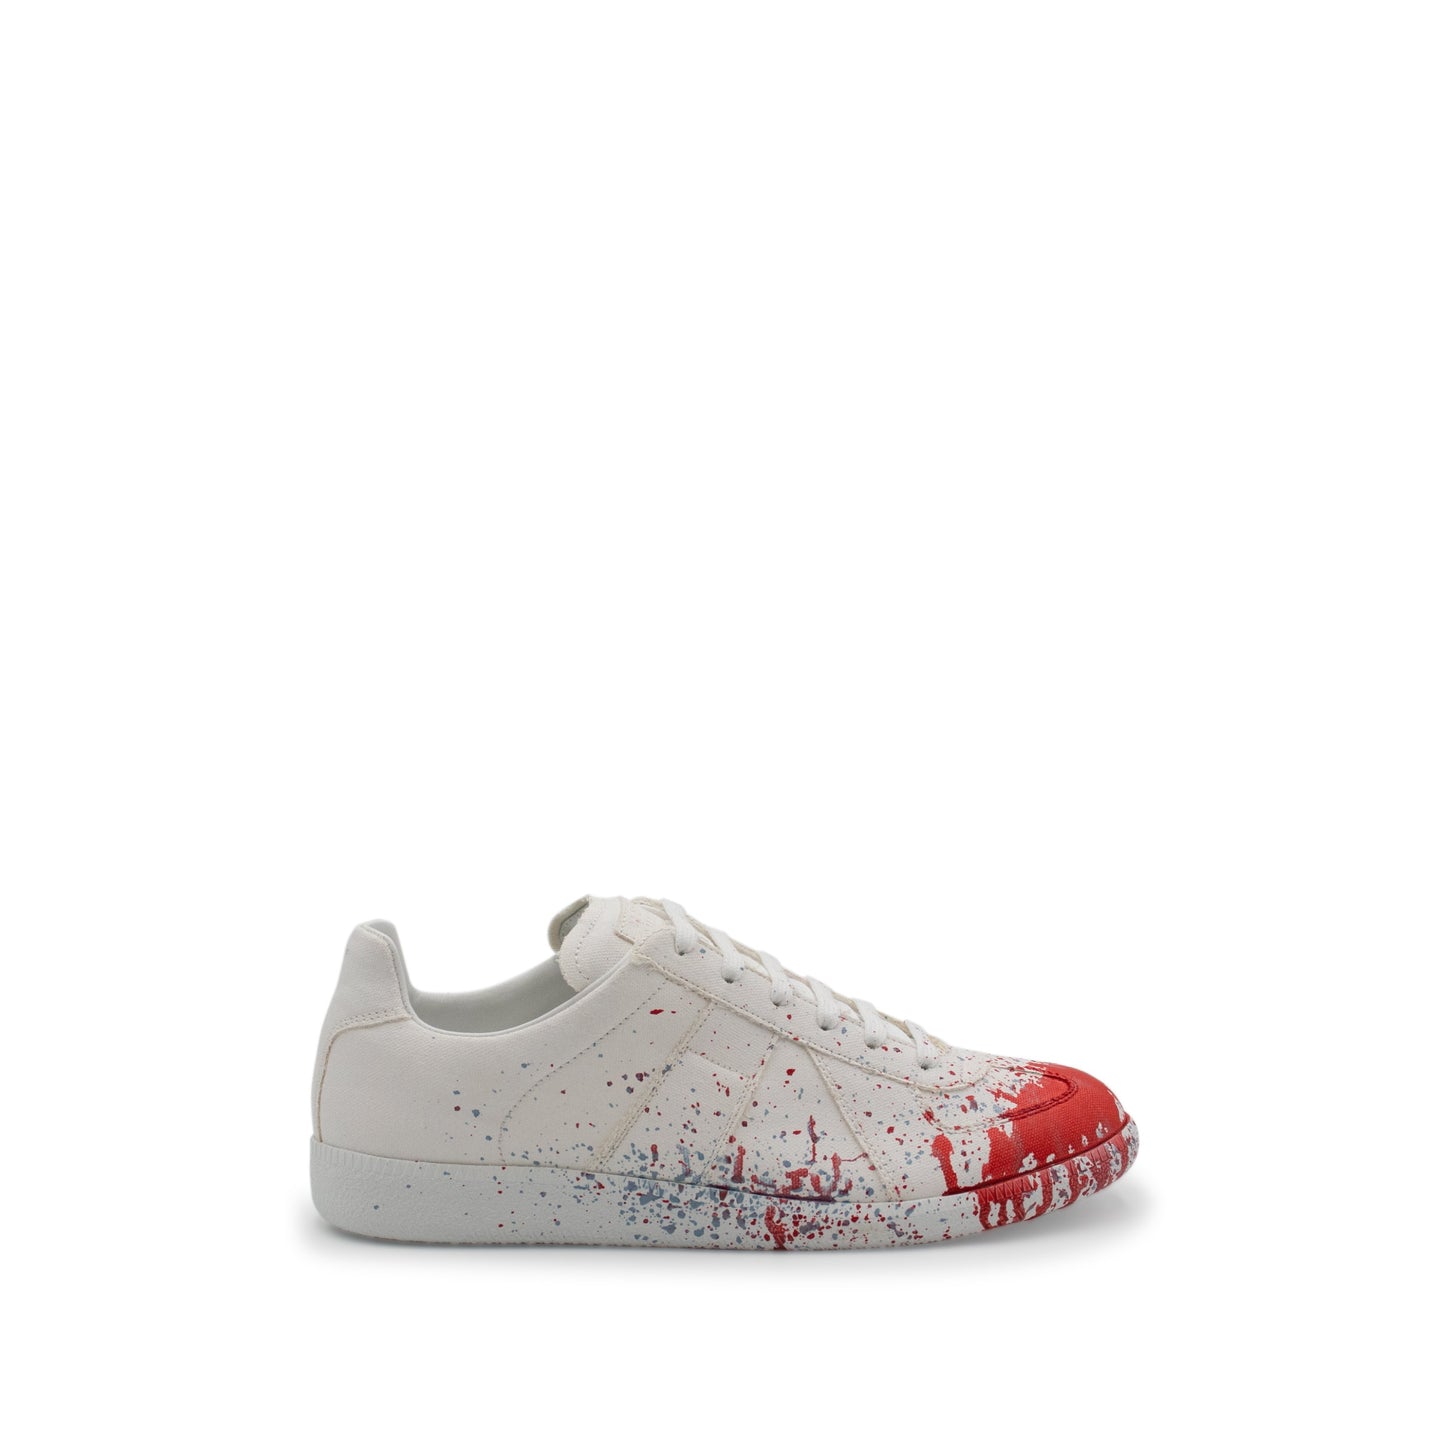 Replica Paint Splatter Sneaker in White